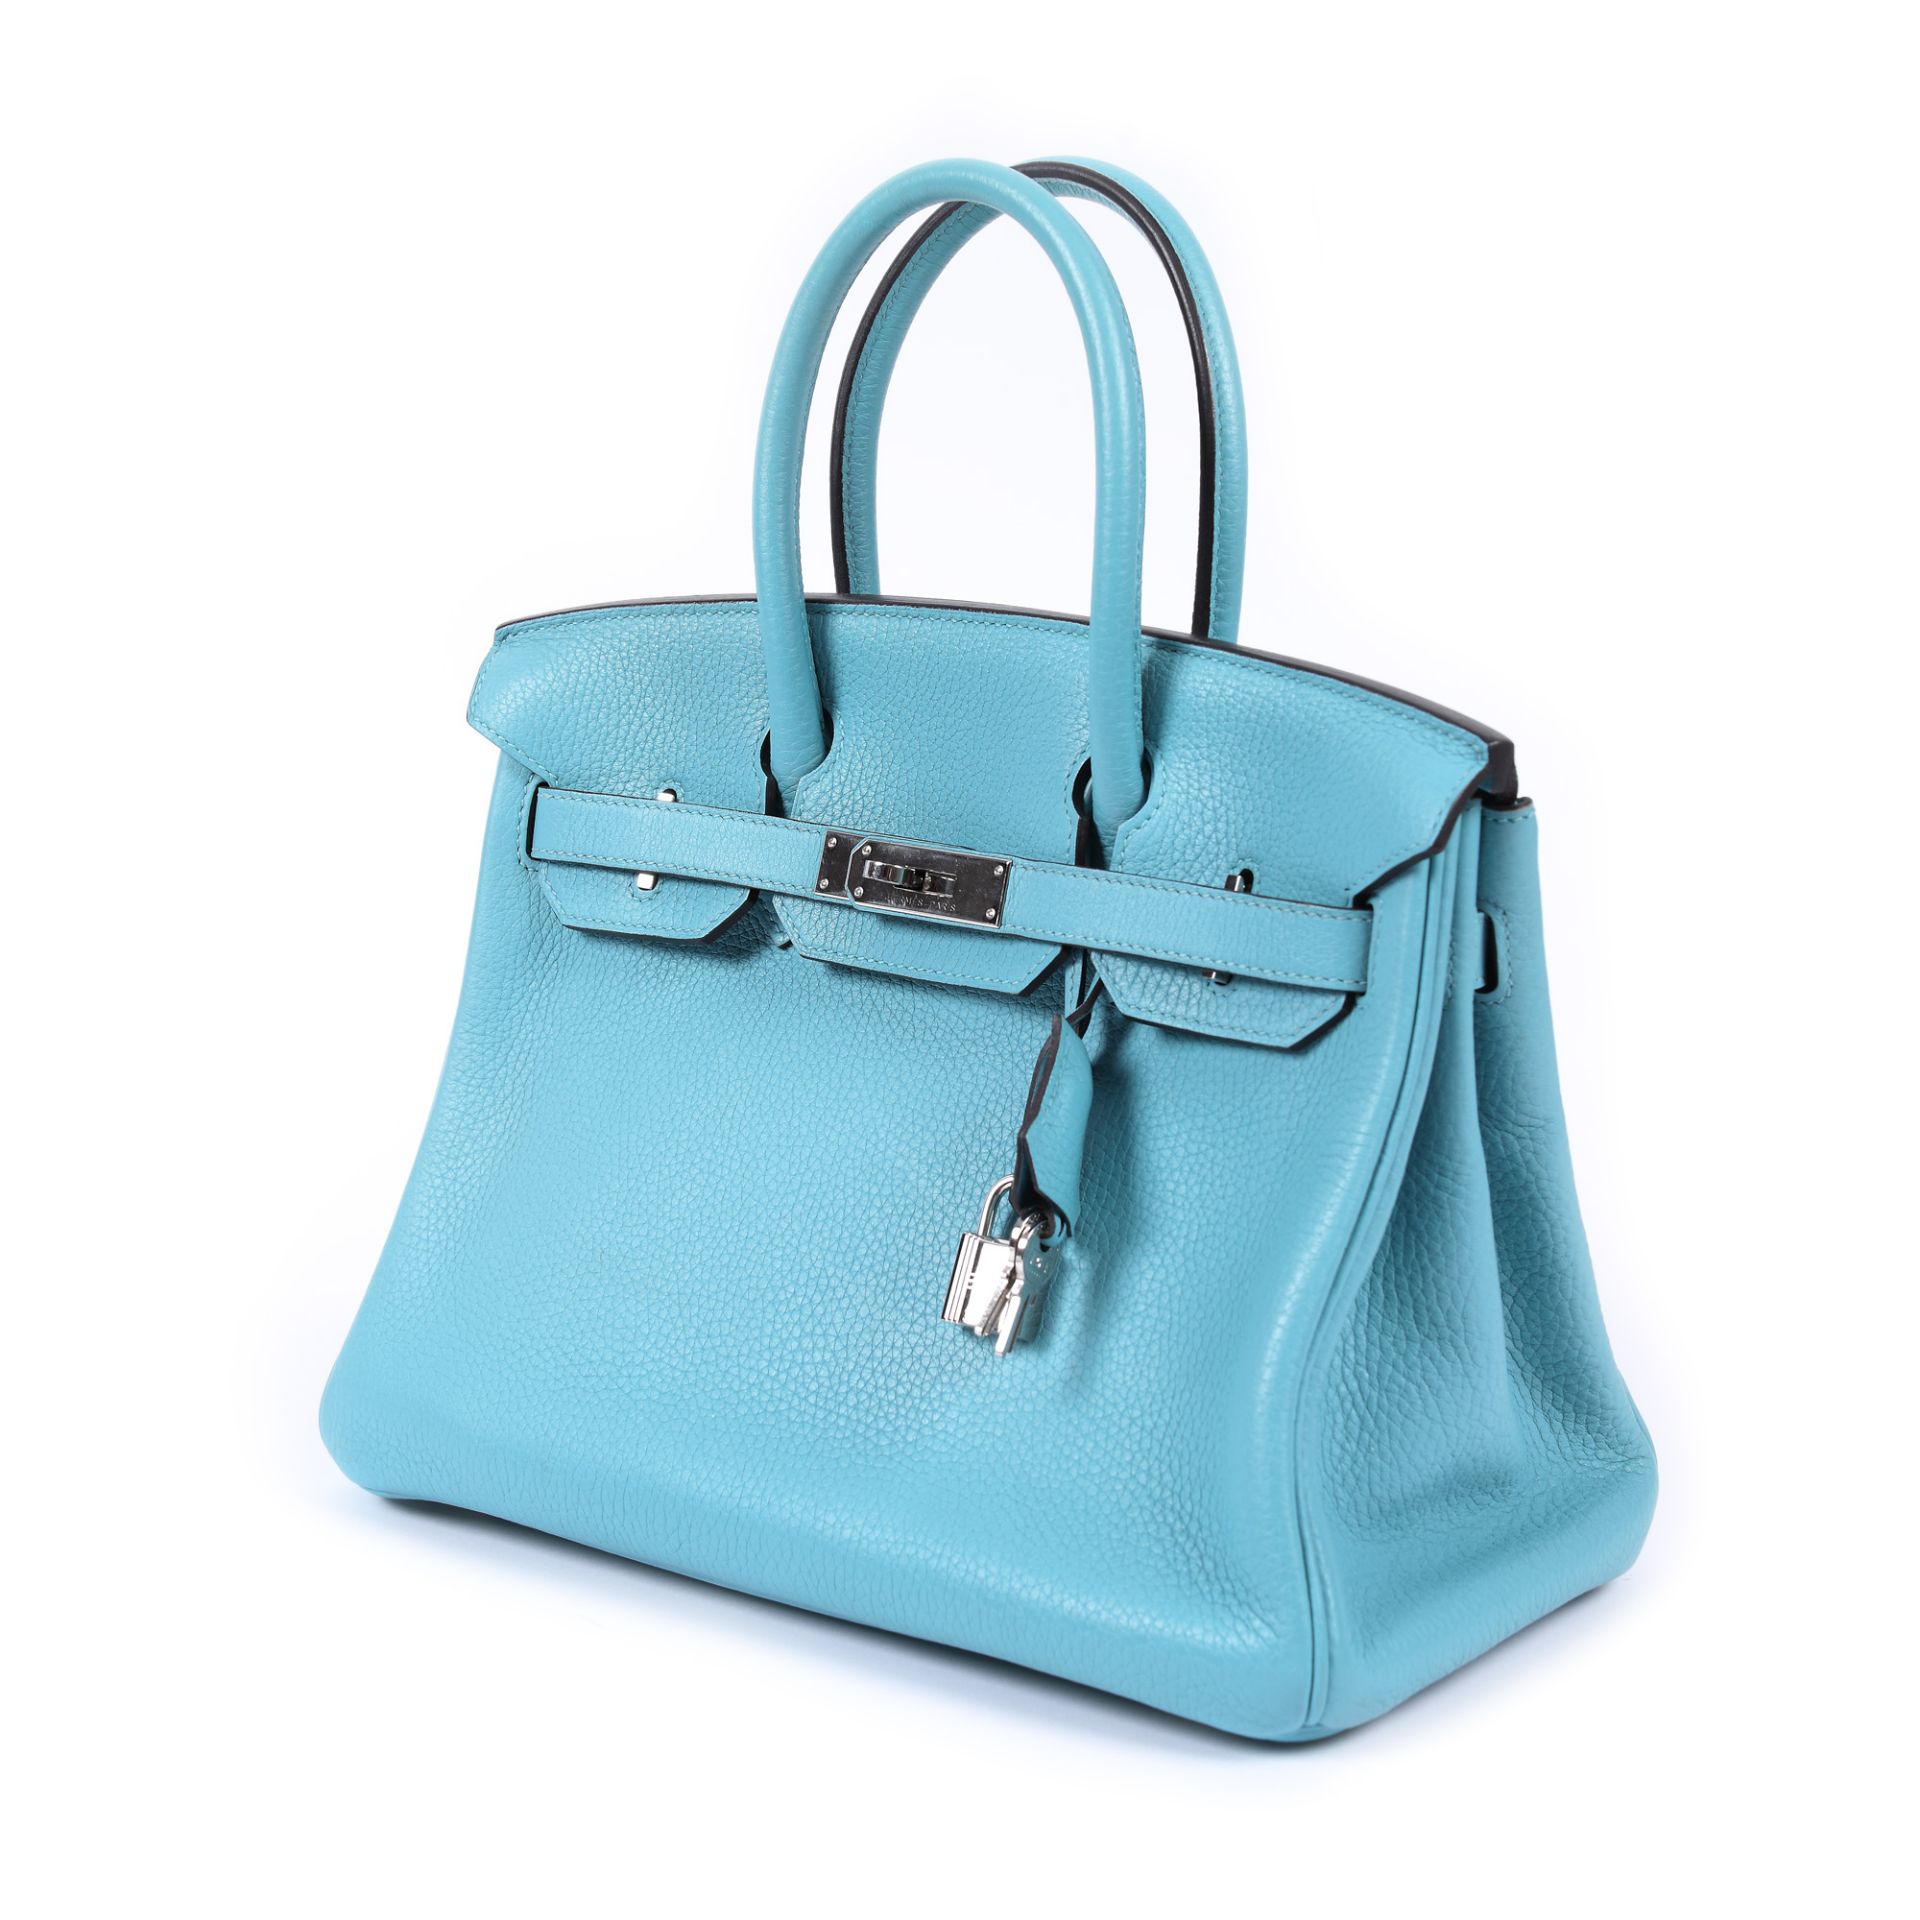 Hermès handbag, Birkin 30, Togo leather, Bleu du Nord colour - Image 5 of 9